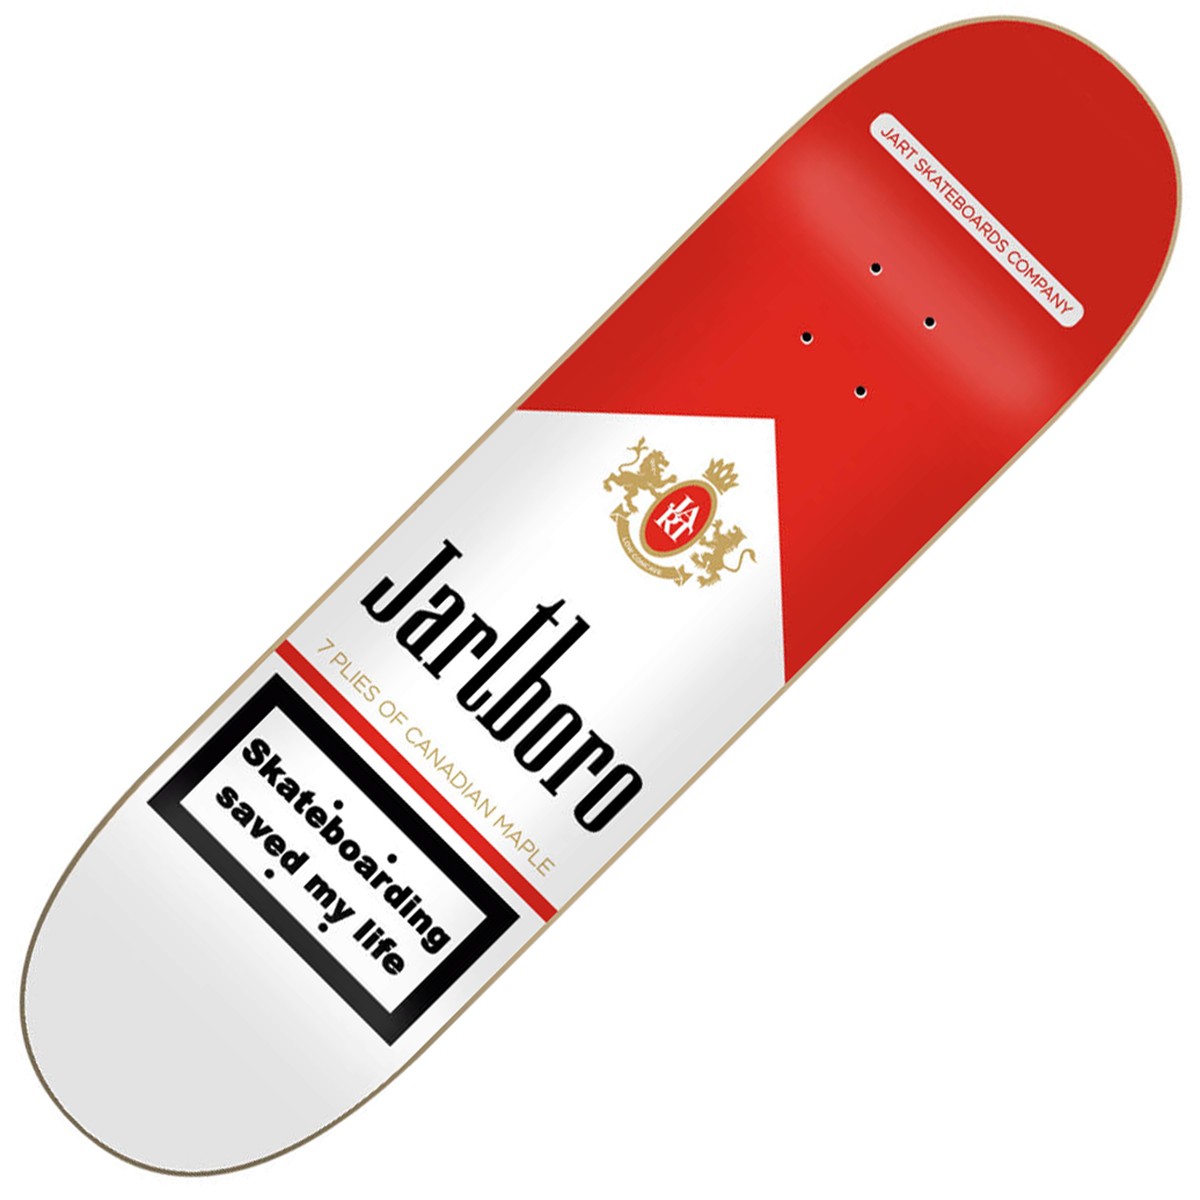 uitbreiden composiet Reinig de vloer JART “Life” Jartboro skateboard deck 8 inches